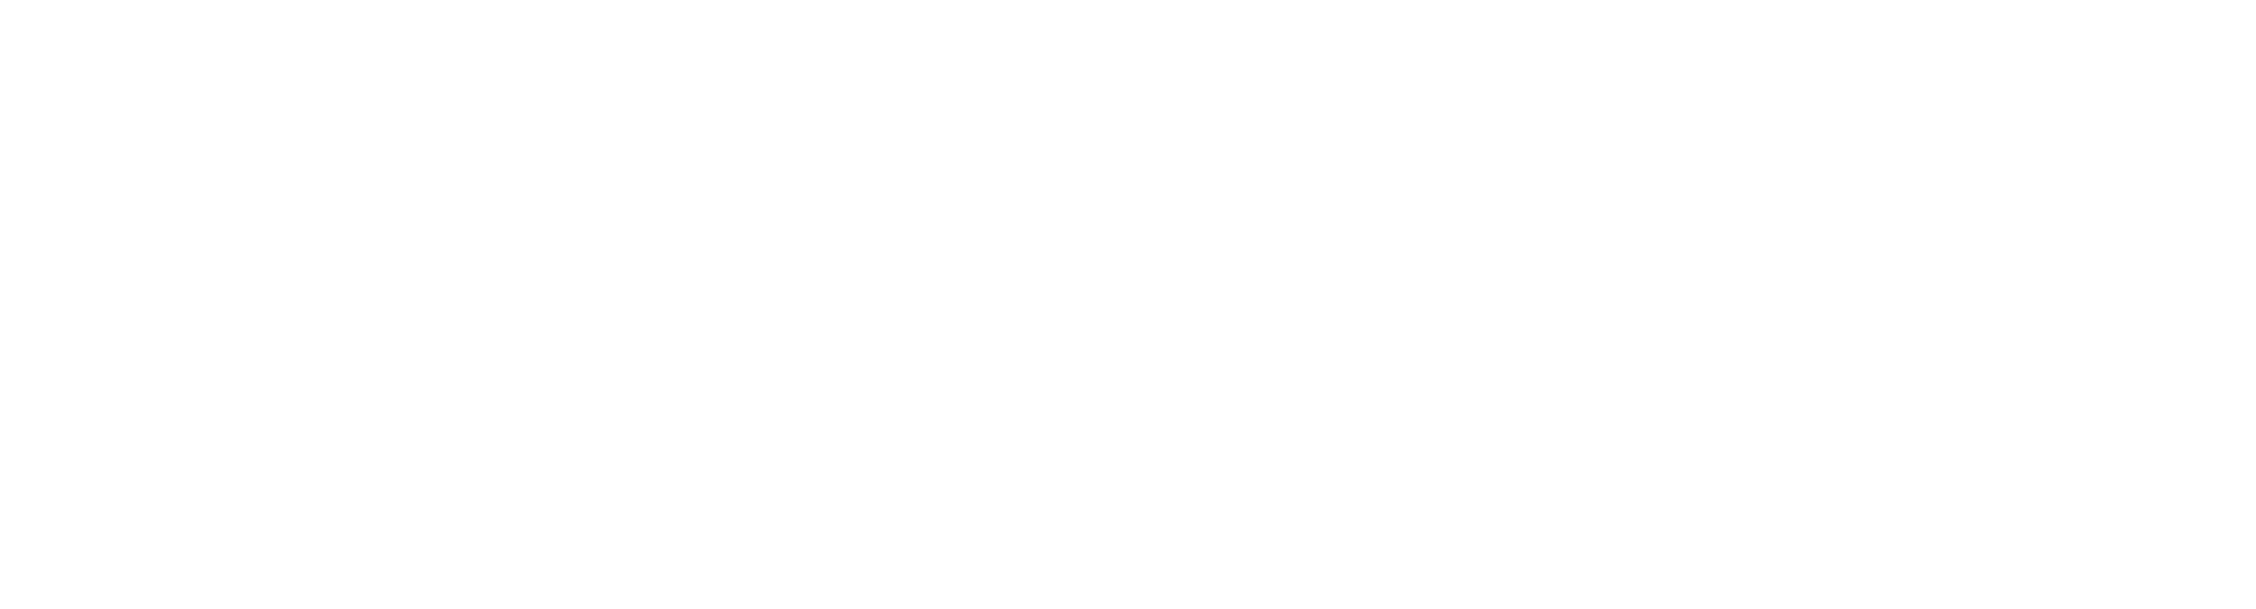 Exertis Canseda logo